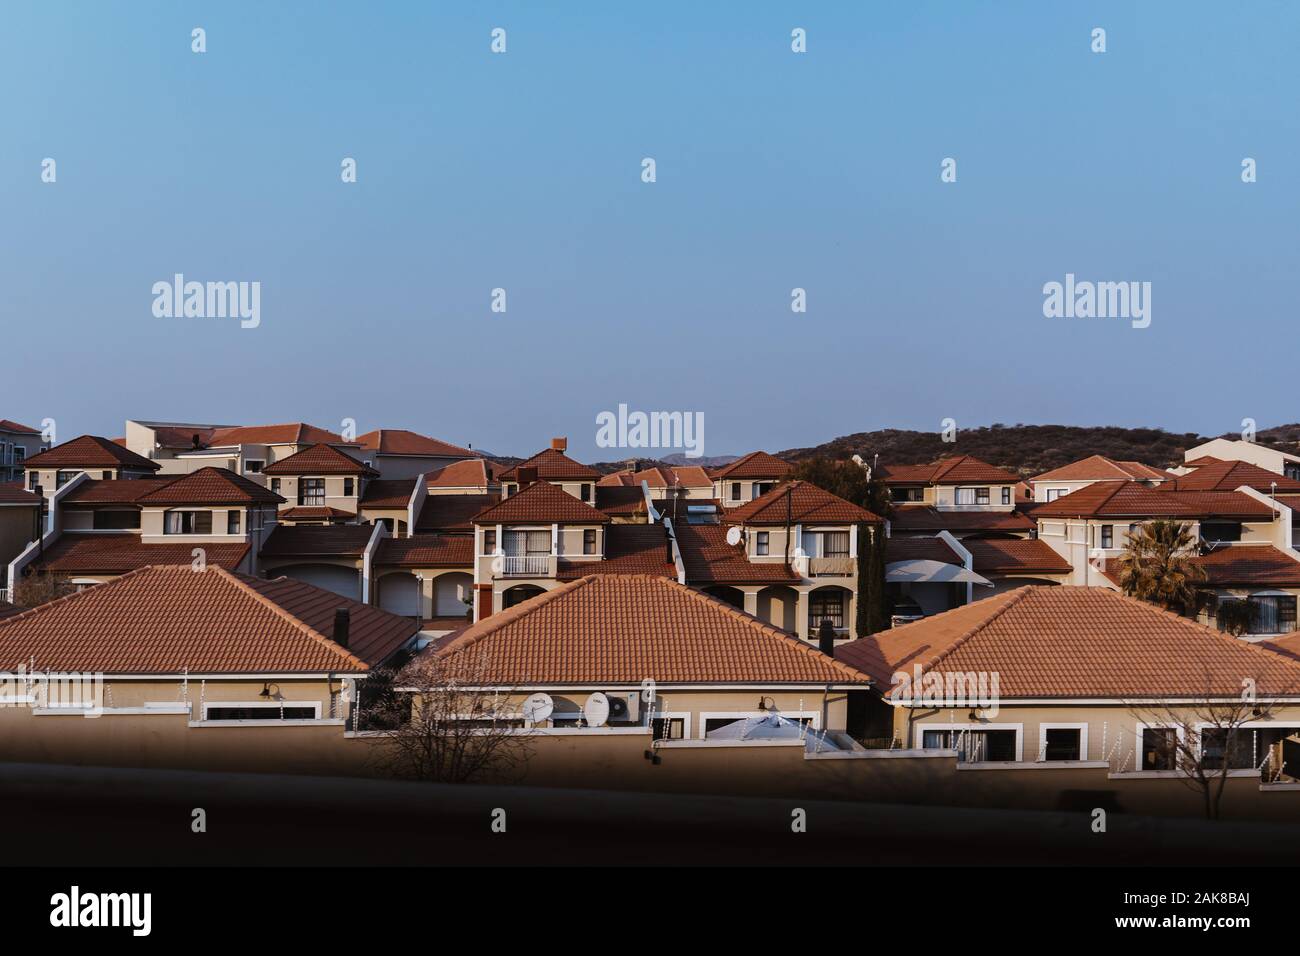 Viele ähnliche Wohnhäuser in Afrika unter blauem Himmel Stockfoto